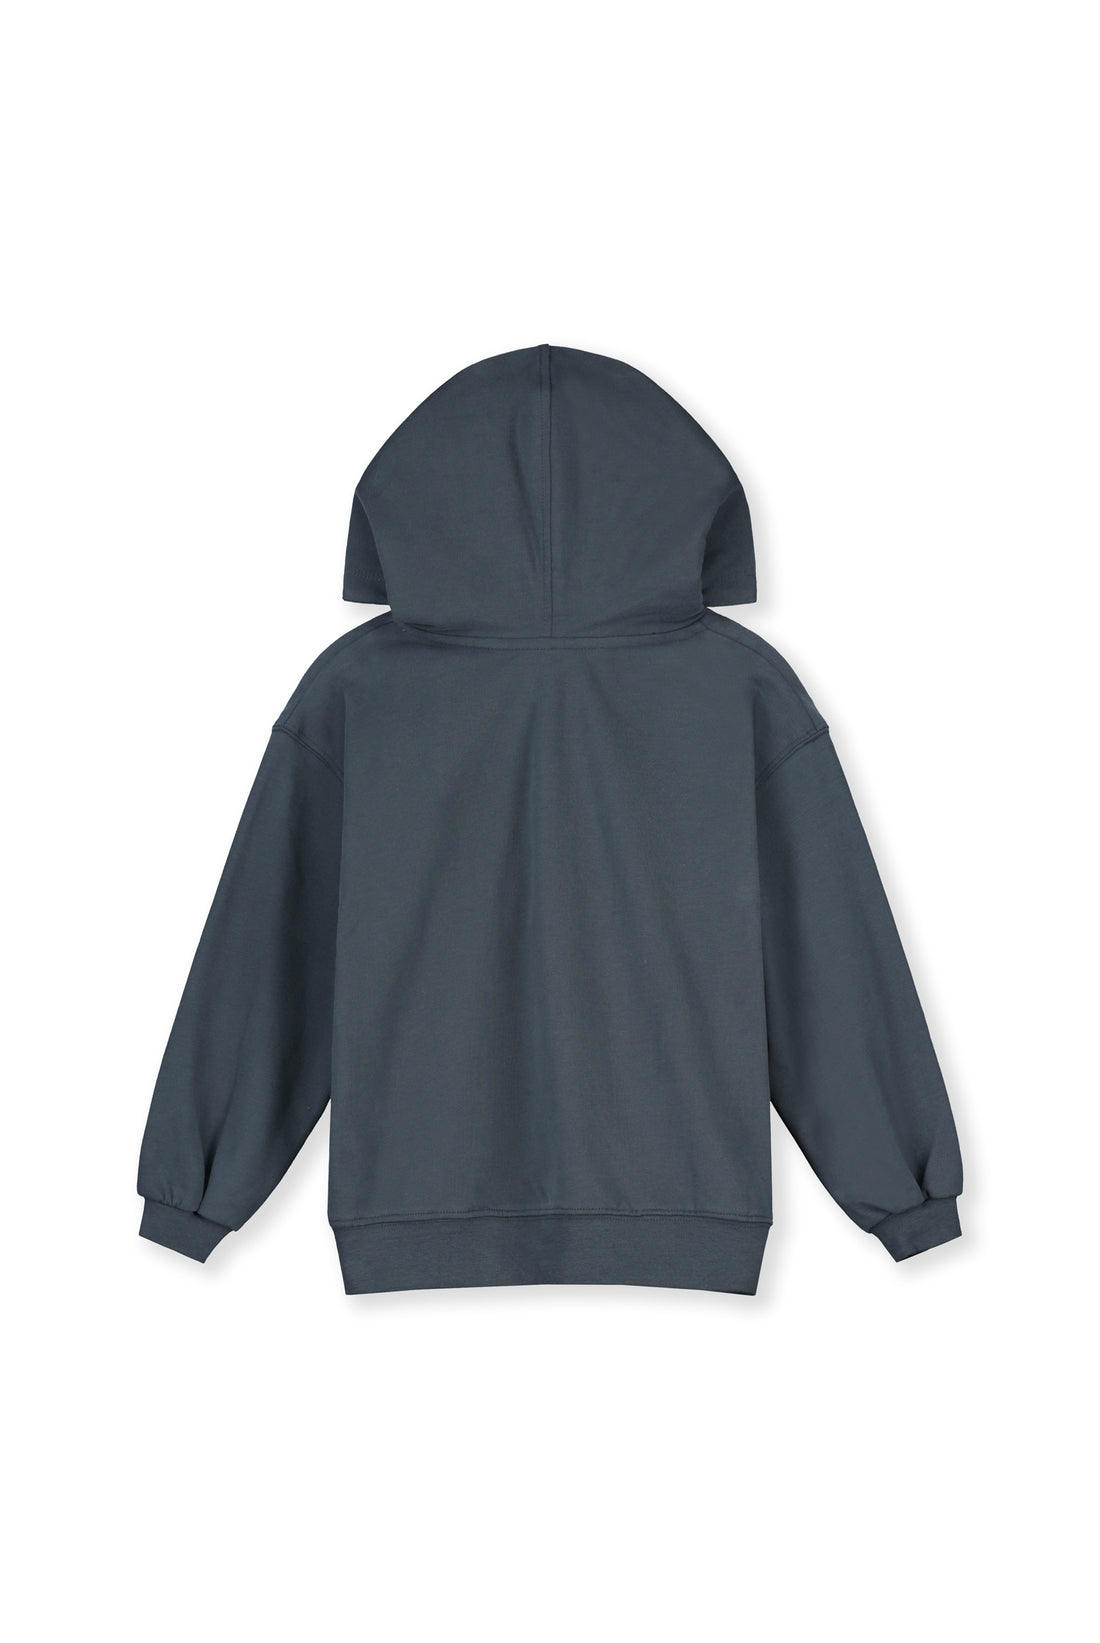 hoodie blue grey